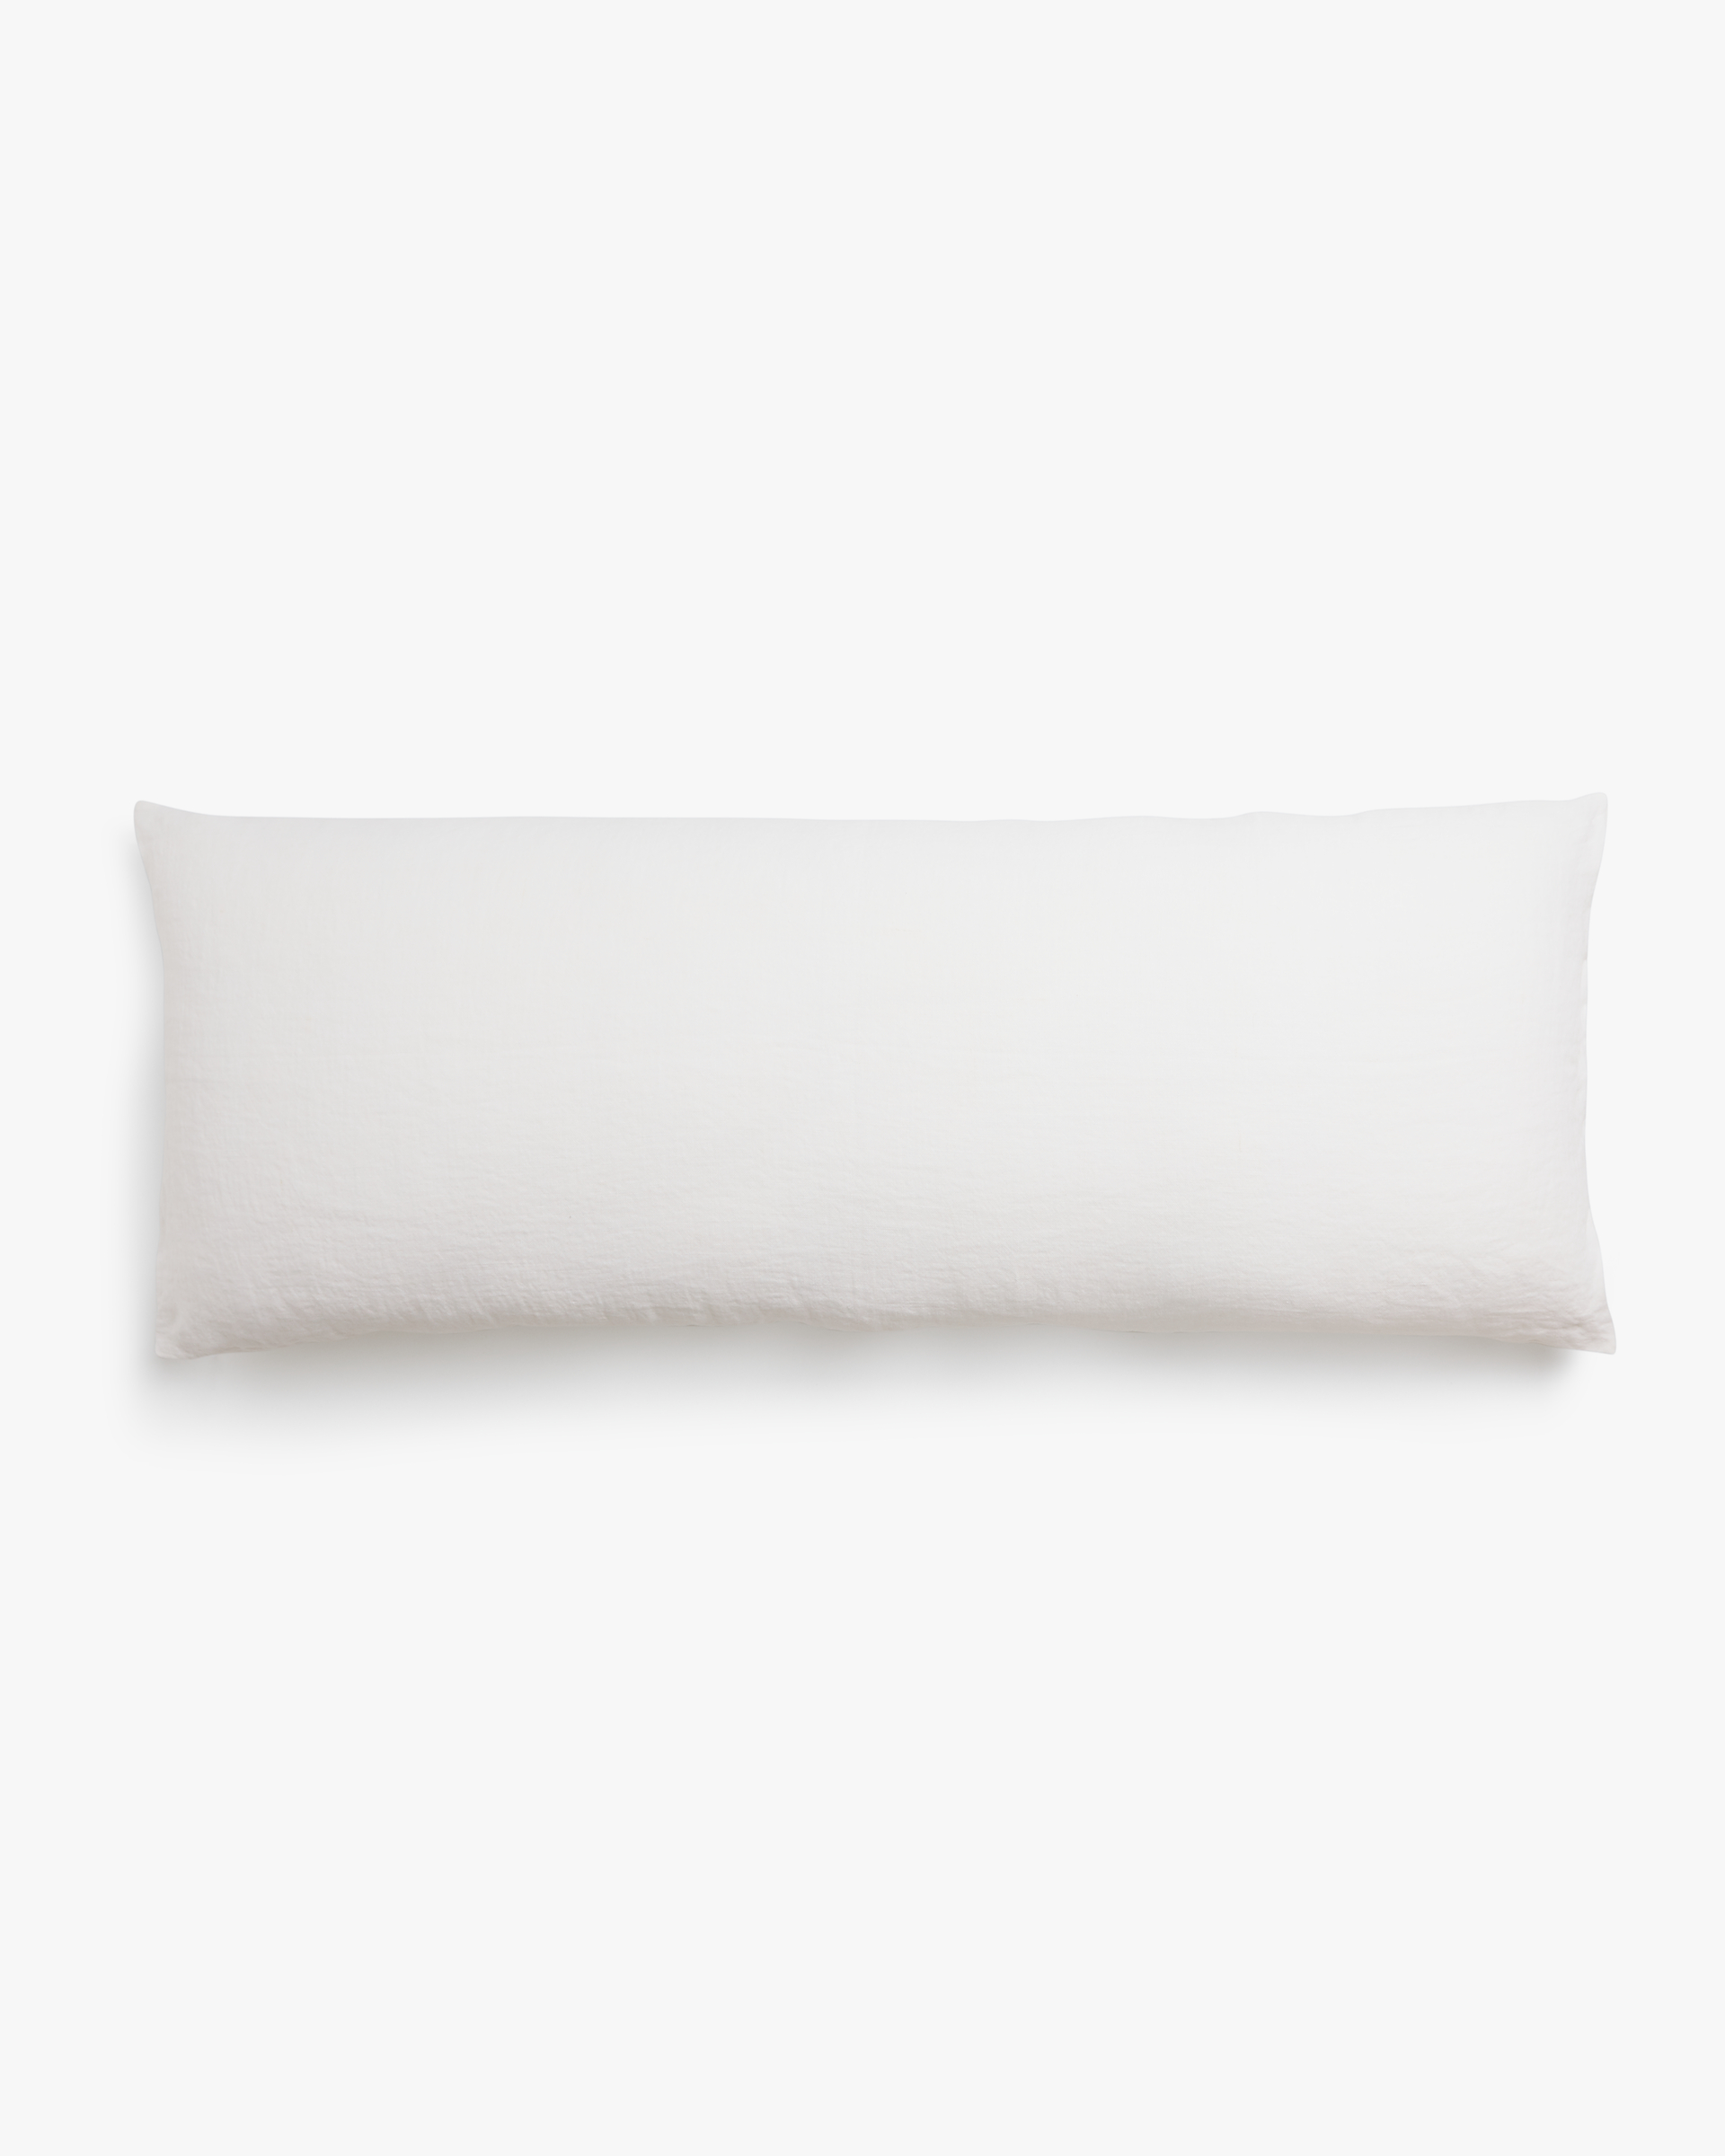 Vintage Linen Body Pillow Cover | Parachute